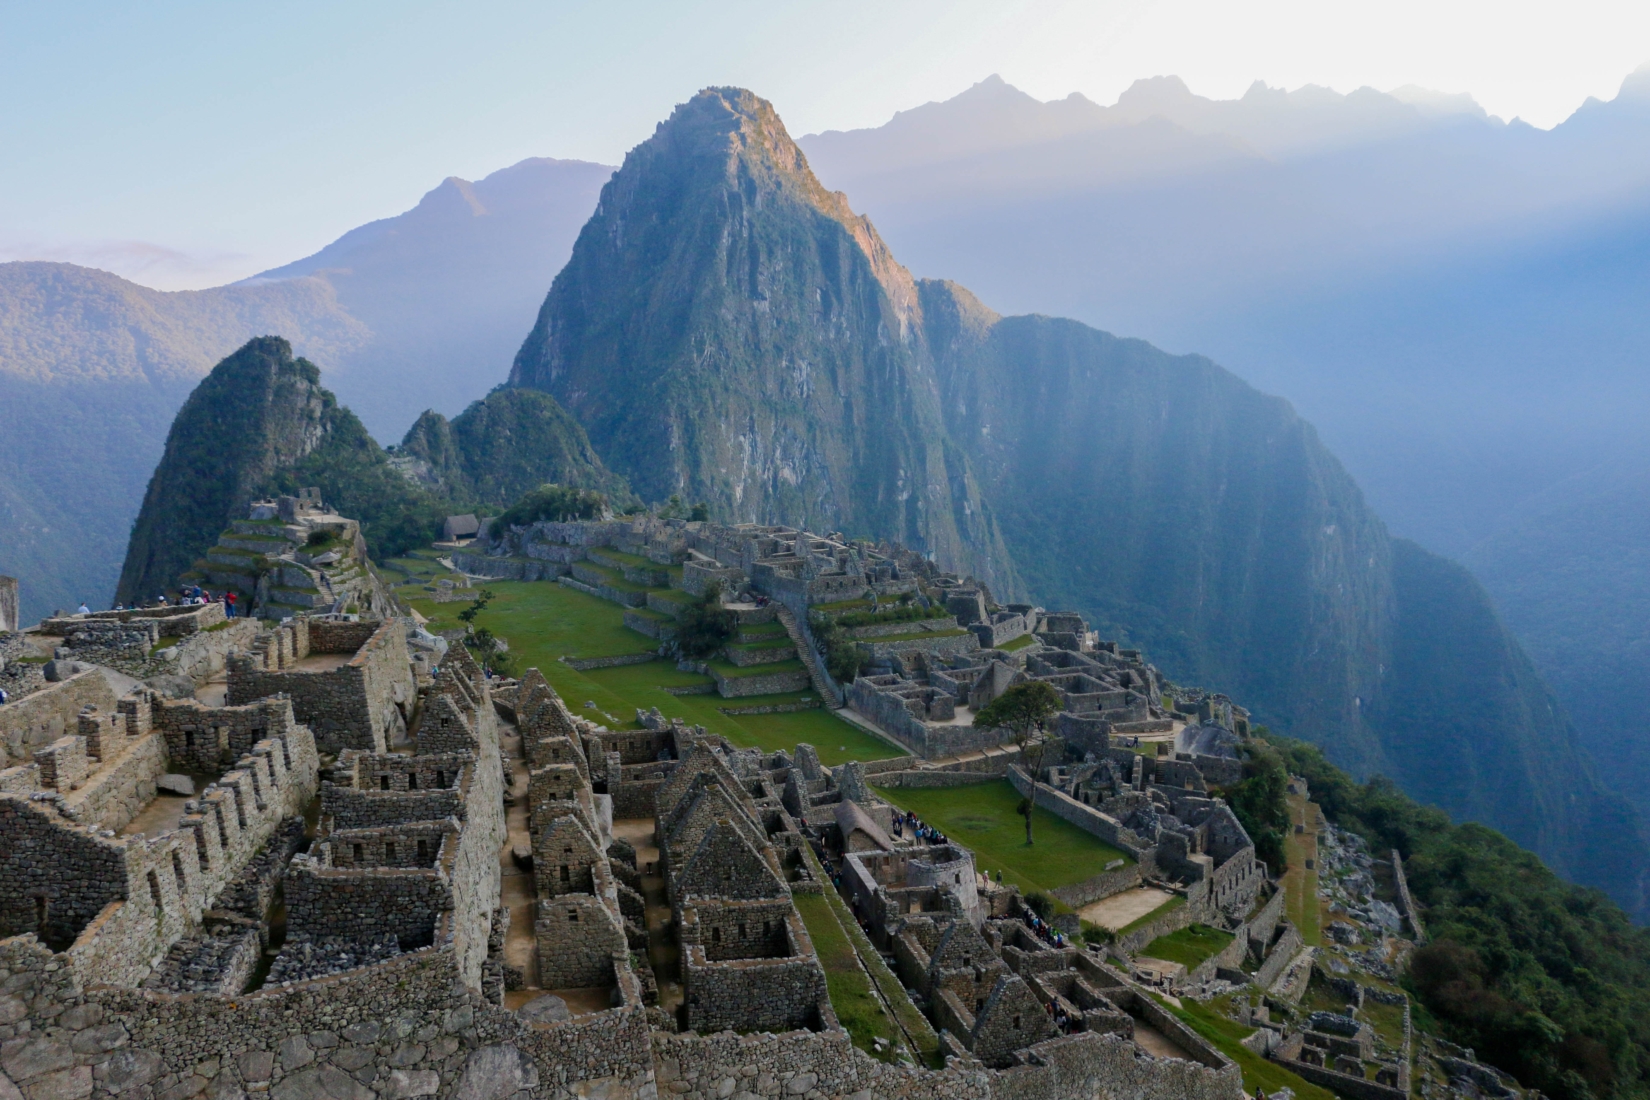 Mountain View of Machu Picchu Ruins